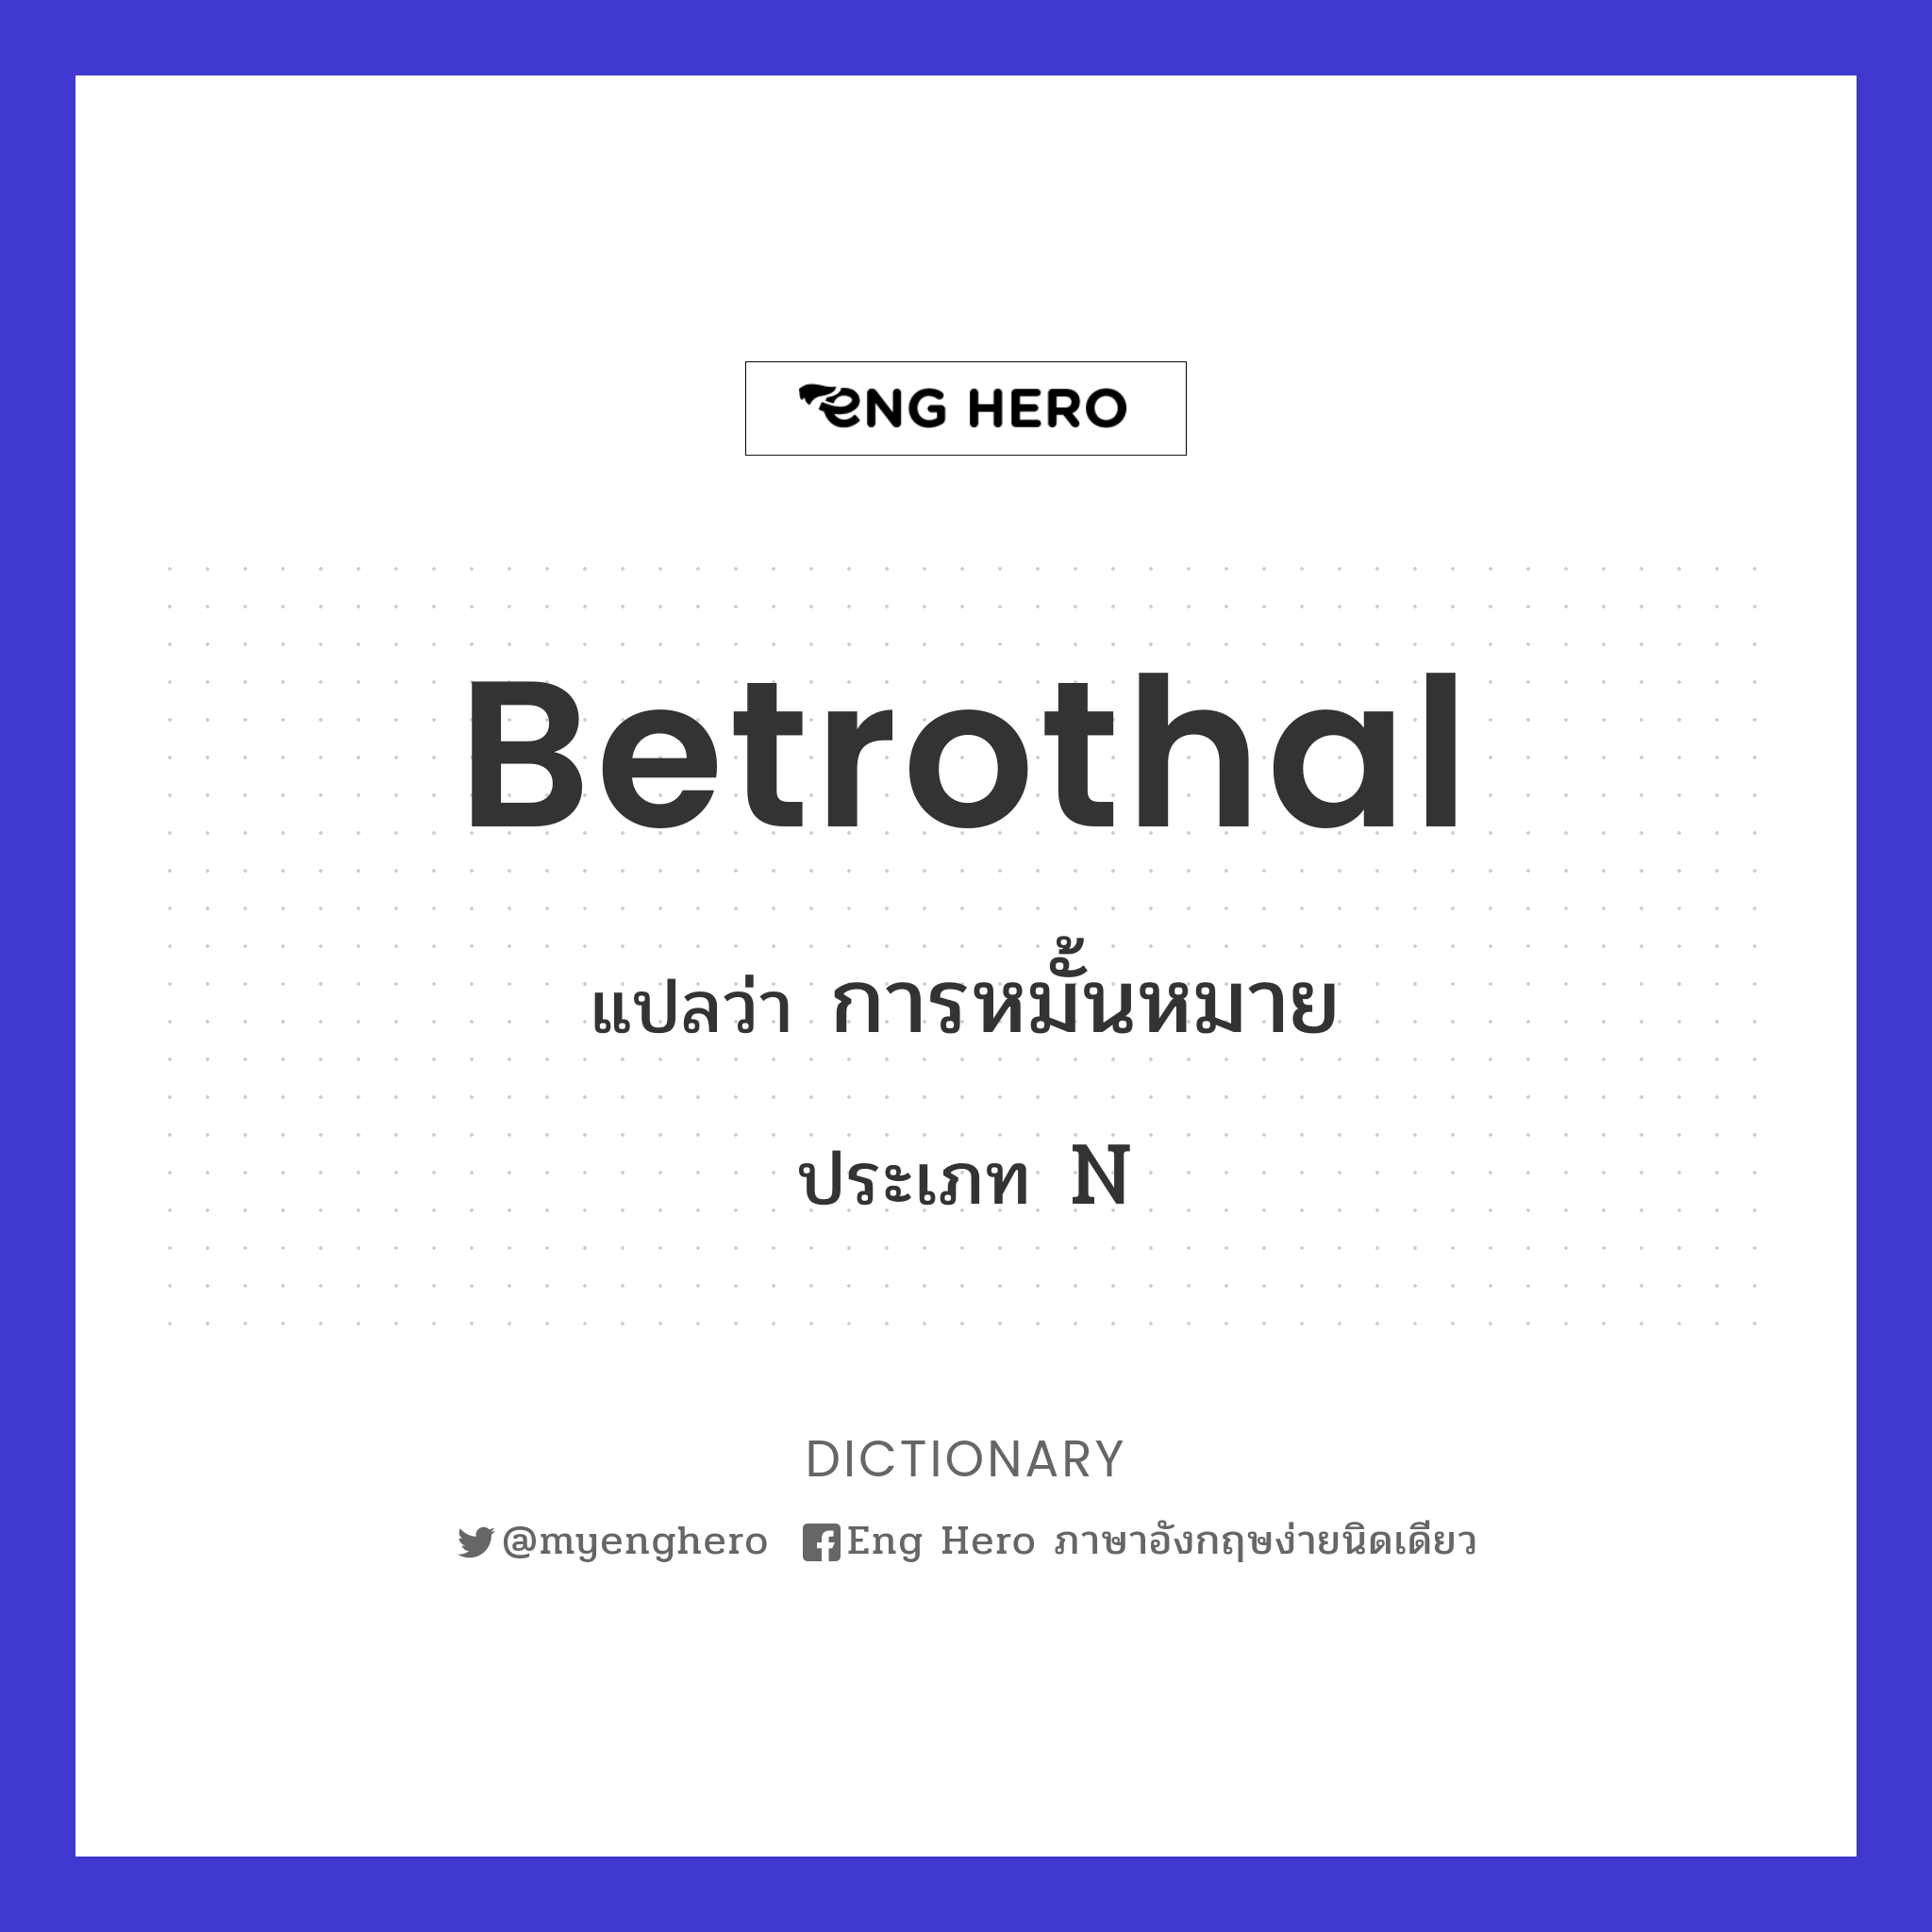 betrothal